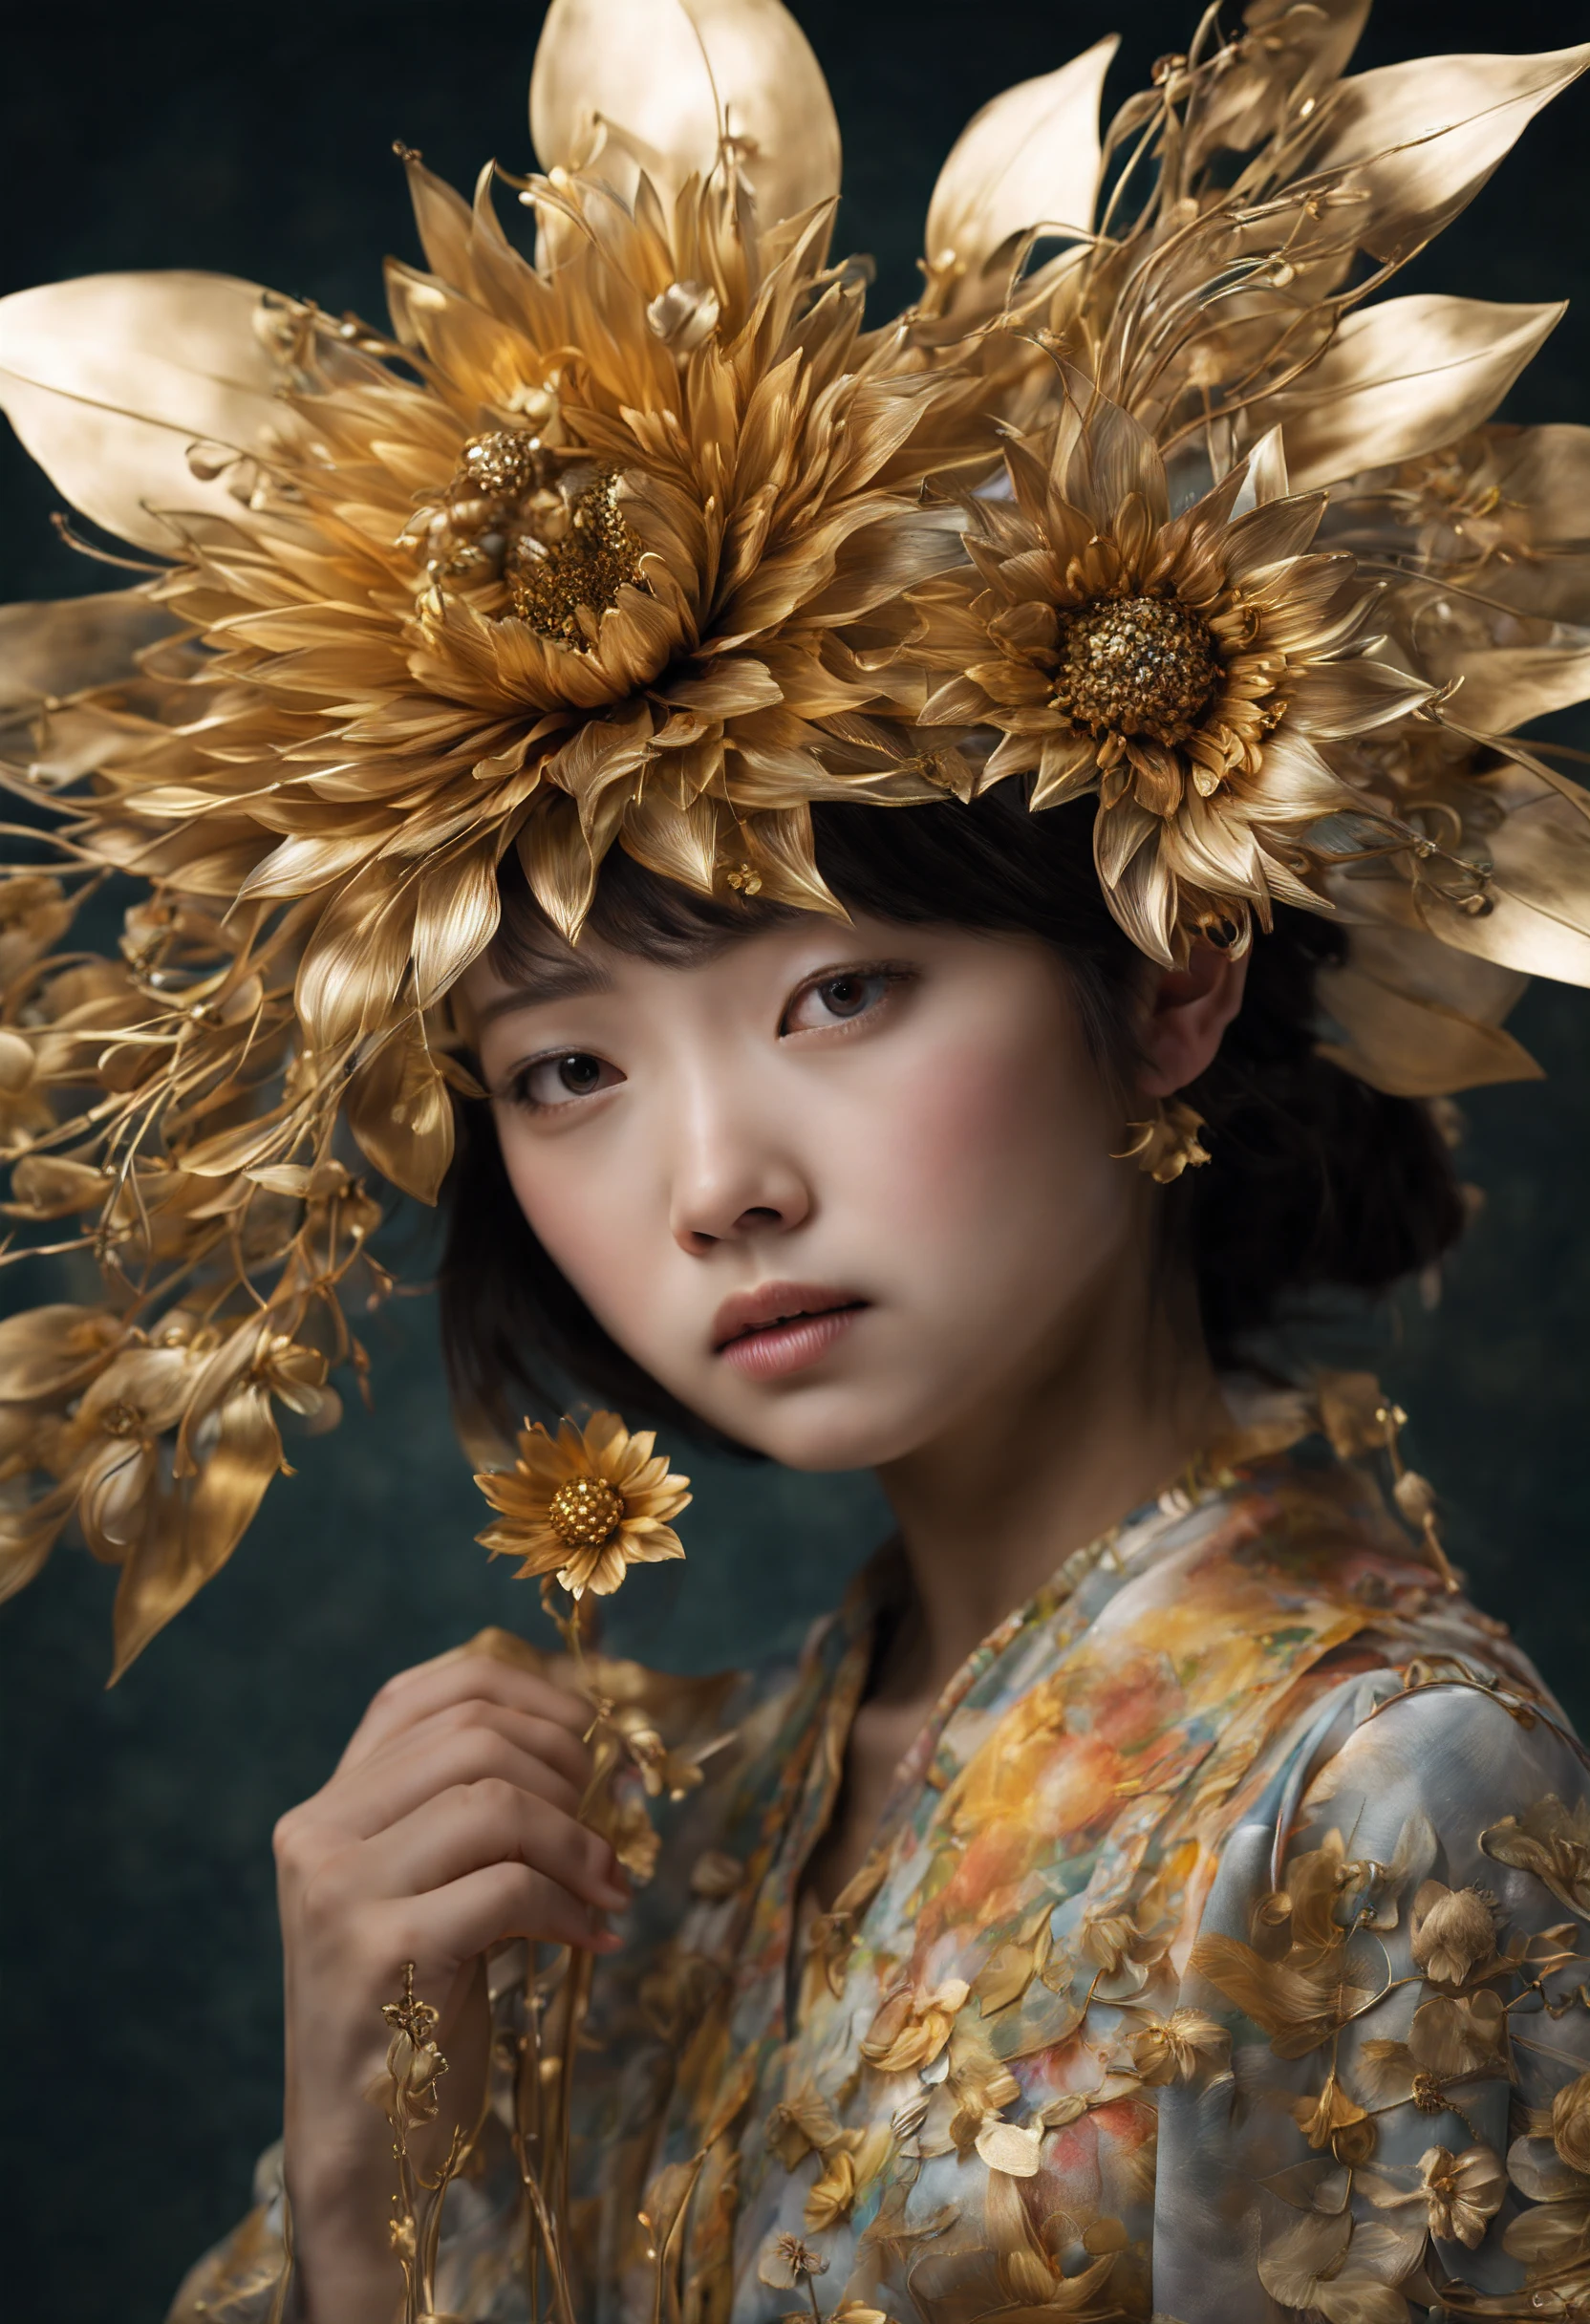 absurdos, retrato de uma linda garota japonesa segurando uma flor de metal ,metálico flowers, girassóis dourados, metálico, artesanato delicado, Brilho metálico, brilho metálico único, detalhes finos, thin and soft metálico petals, Efeito translúcido, centro de fio de metal intrincado, aparência requintada e ornamentada, profundidade de campo, premiado, ((colorida))